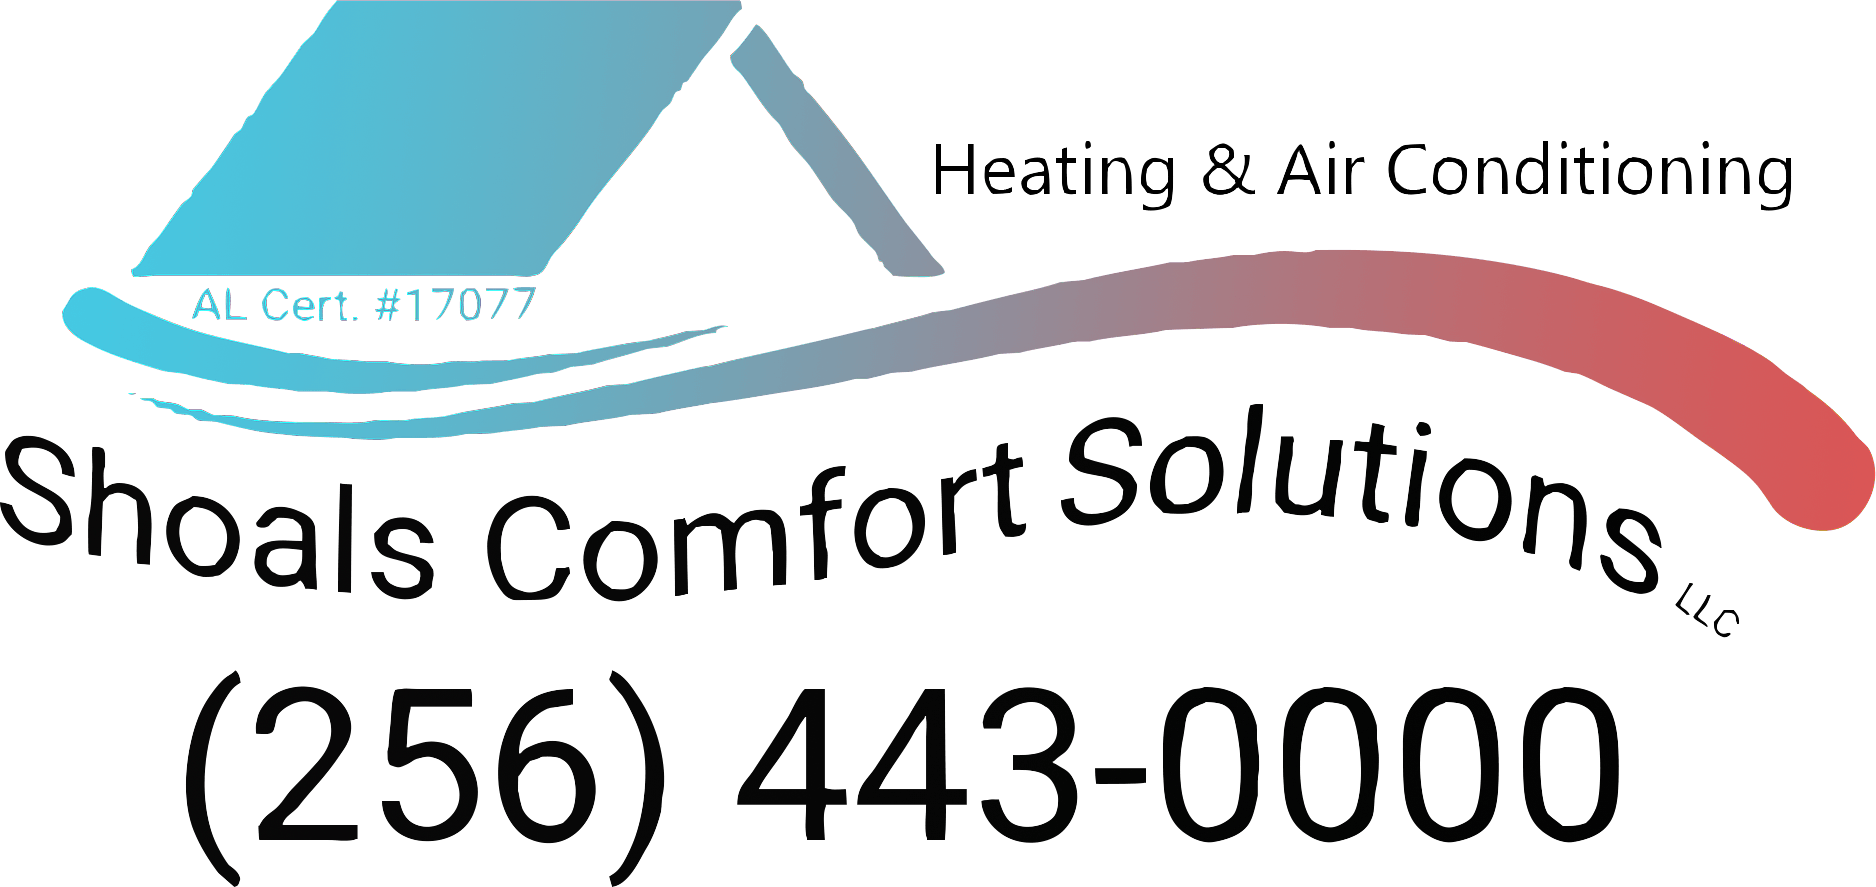 Shoals Comfort Solutions LLC